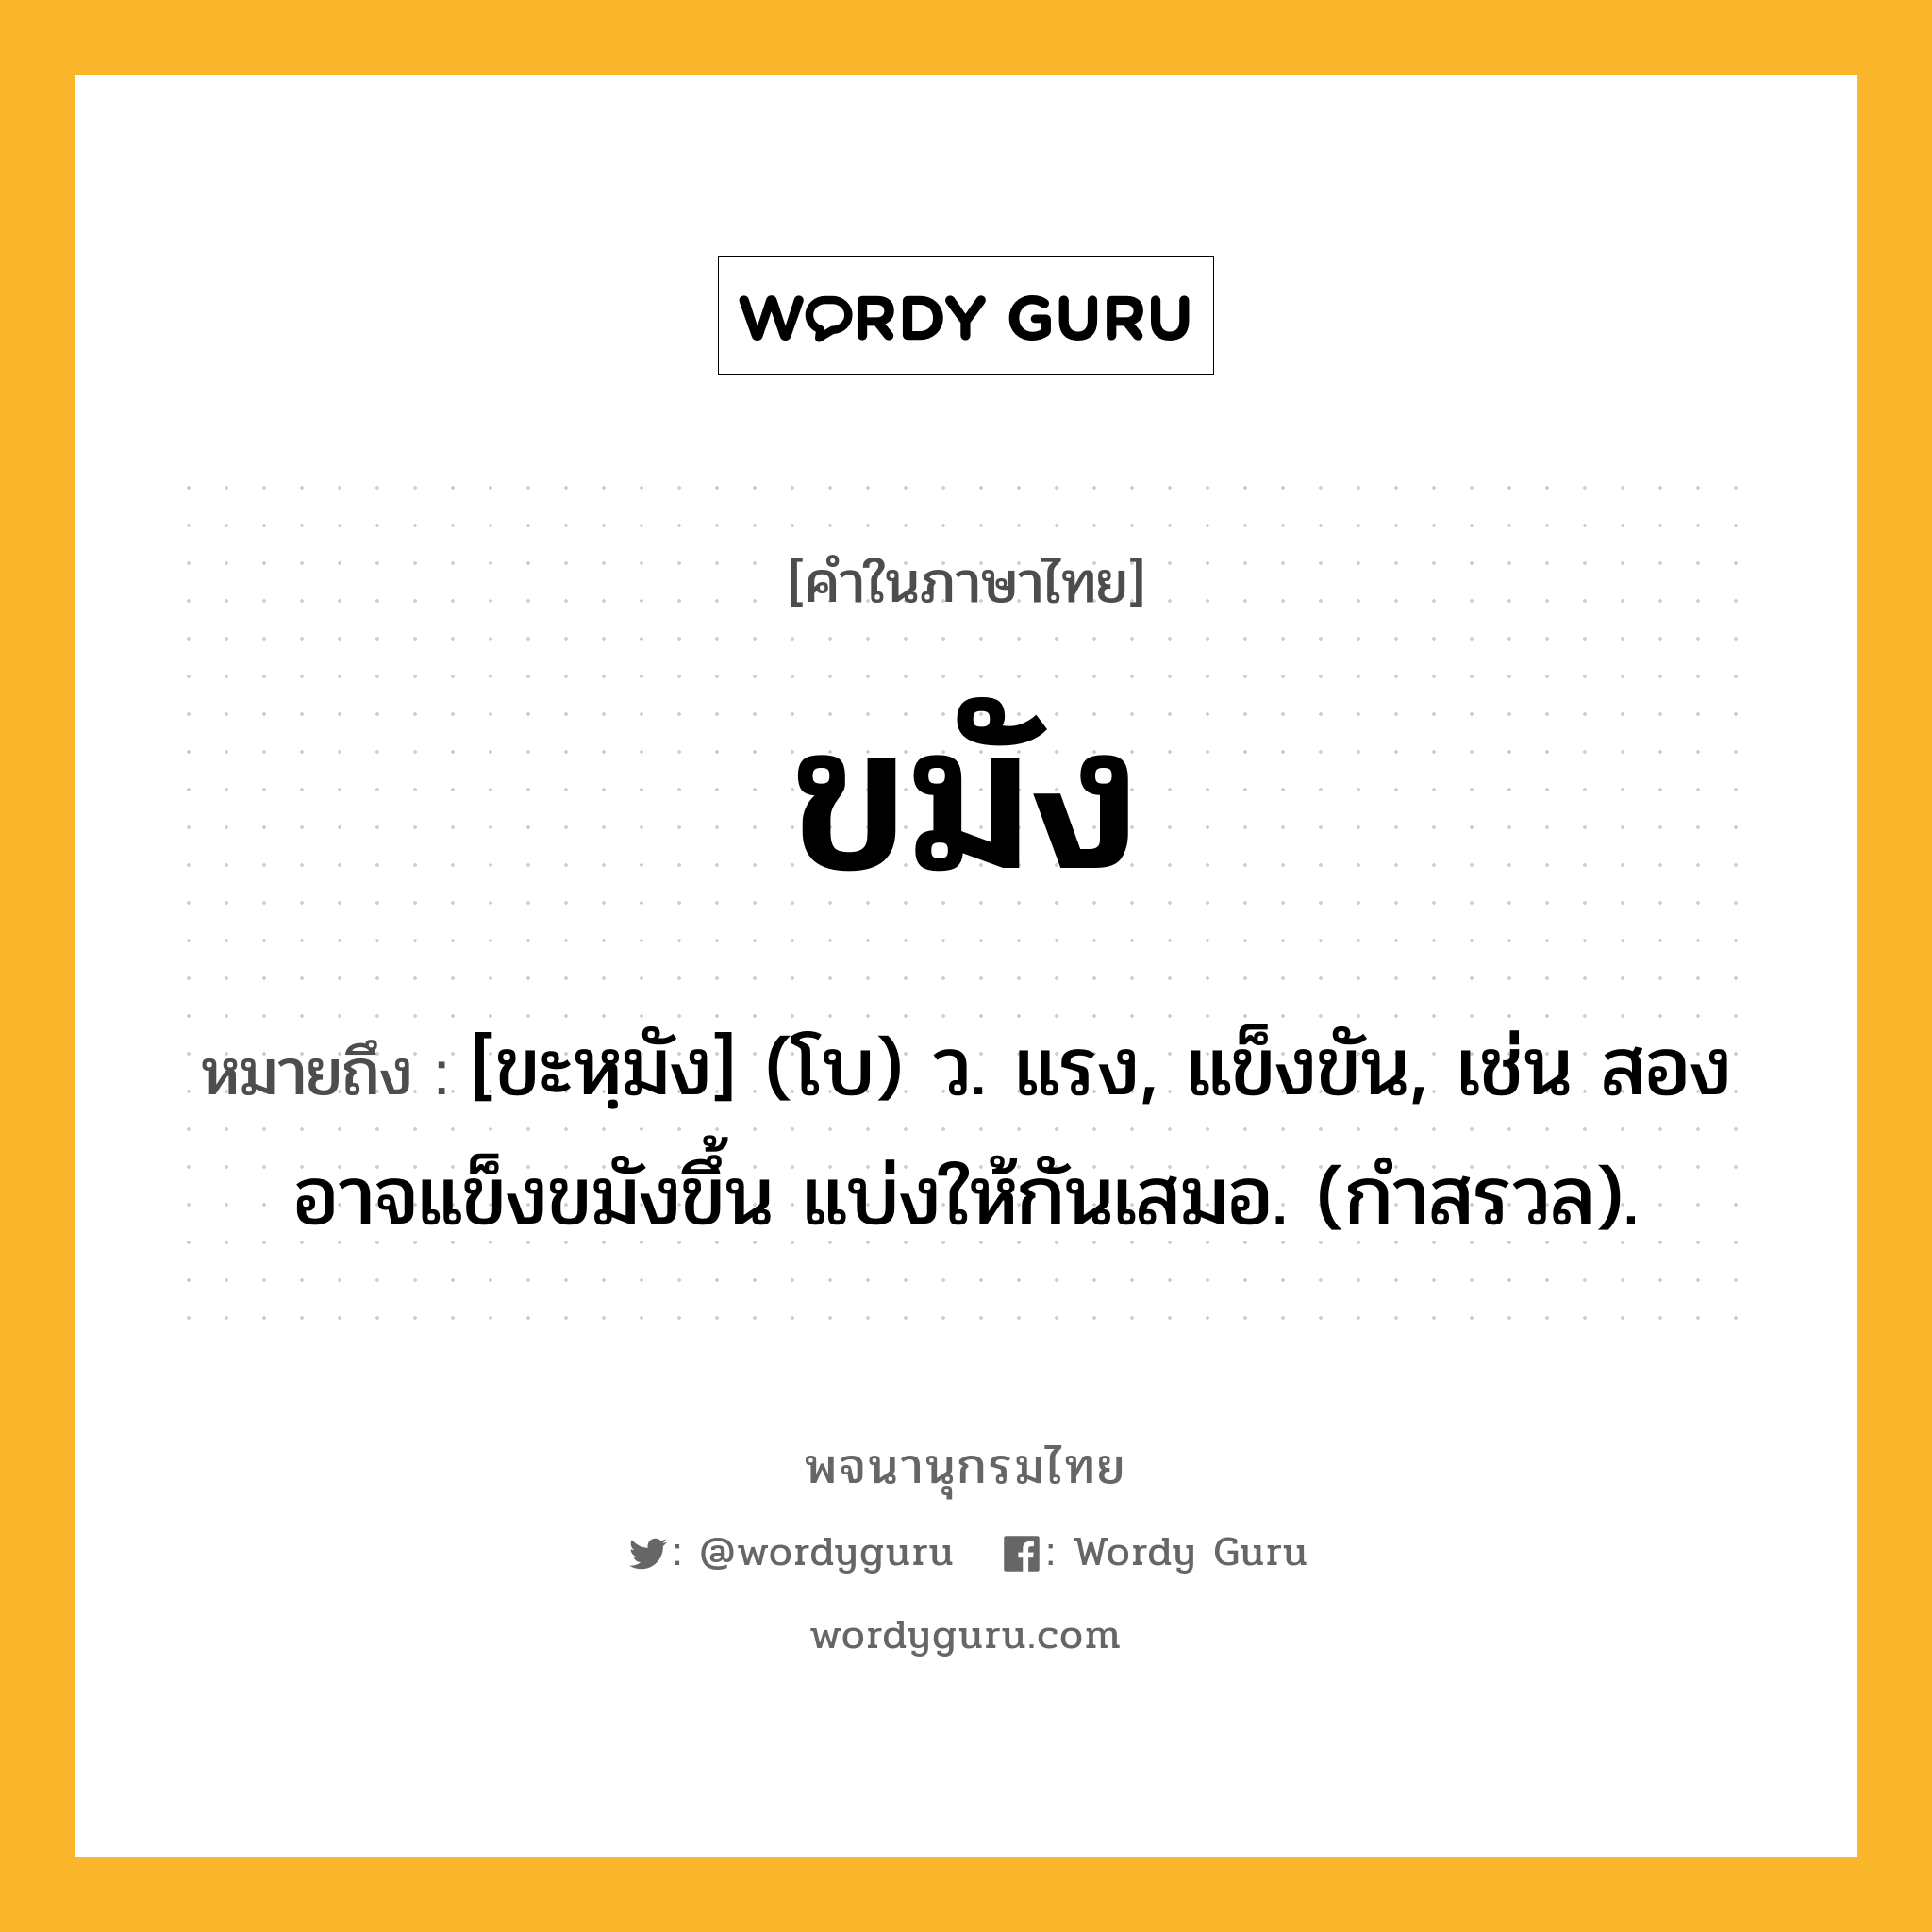 ขมัง ความหมาย หมายถึงอะไร?, คำในภาษาไทย ขมัง หมายถึง [ขะหฺมัง] (โบ) ว. แรง, แข็งขัน, เช่น สองอาจแข็งขมังขึ้น แบ่งให้กันเสมอ. (กําสรวล).